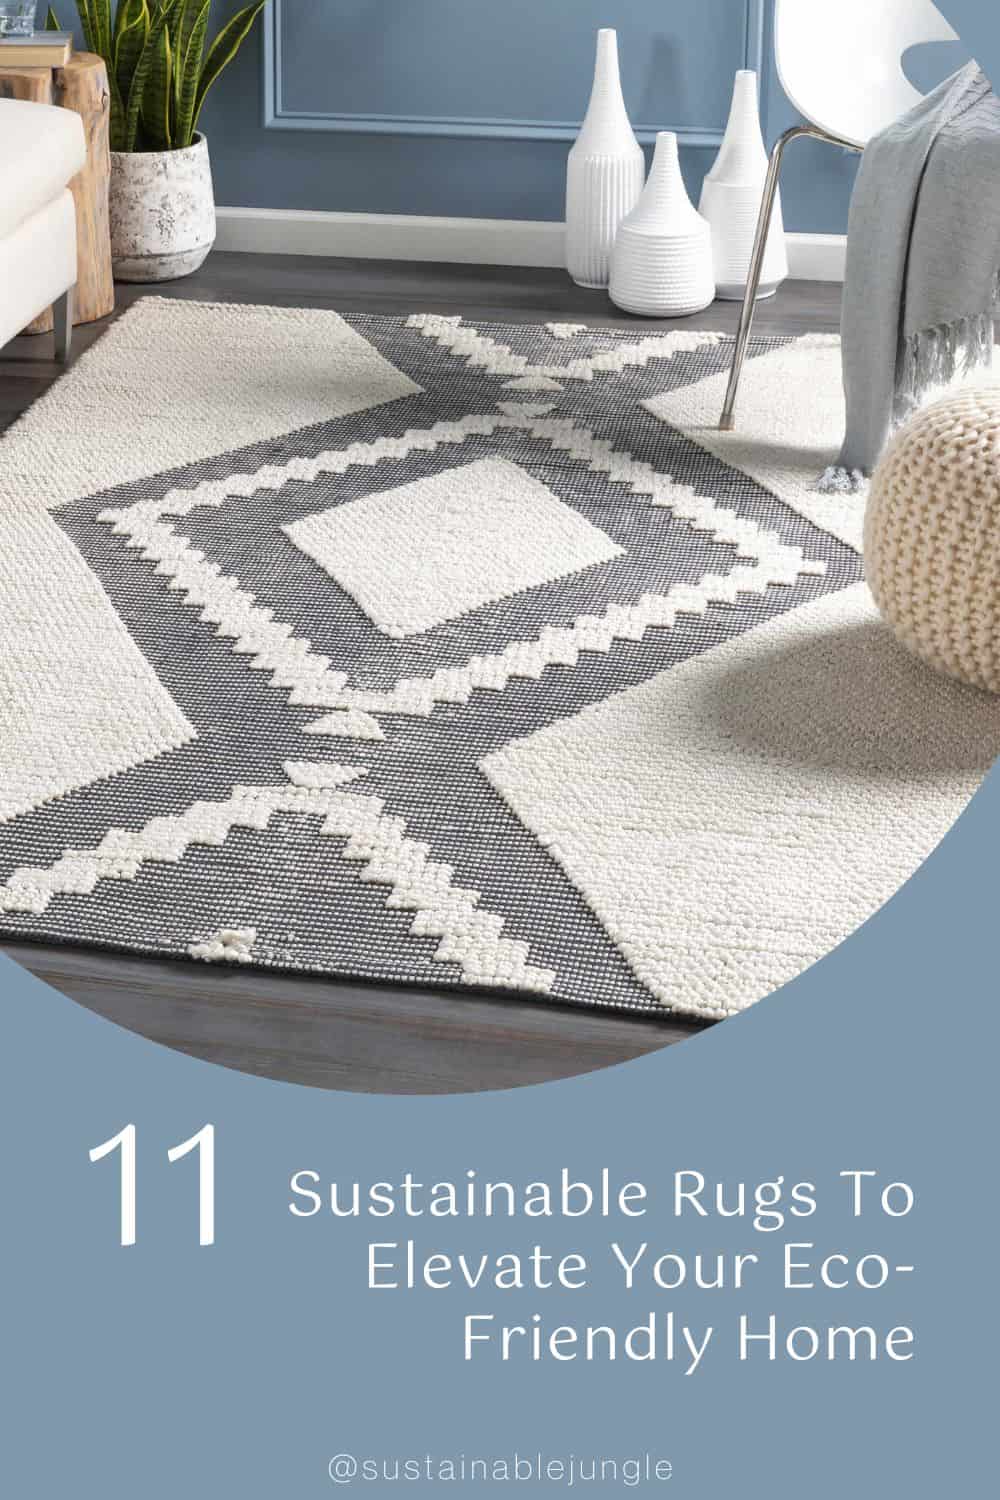 11款可持续地毯提升你的环保家居形象:精品地毯#可持续地毯#可持续区域地毯#可持续有机地毯#生态友好地毯#环保地毯#可持续丛林